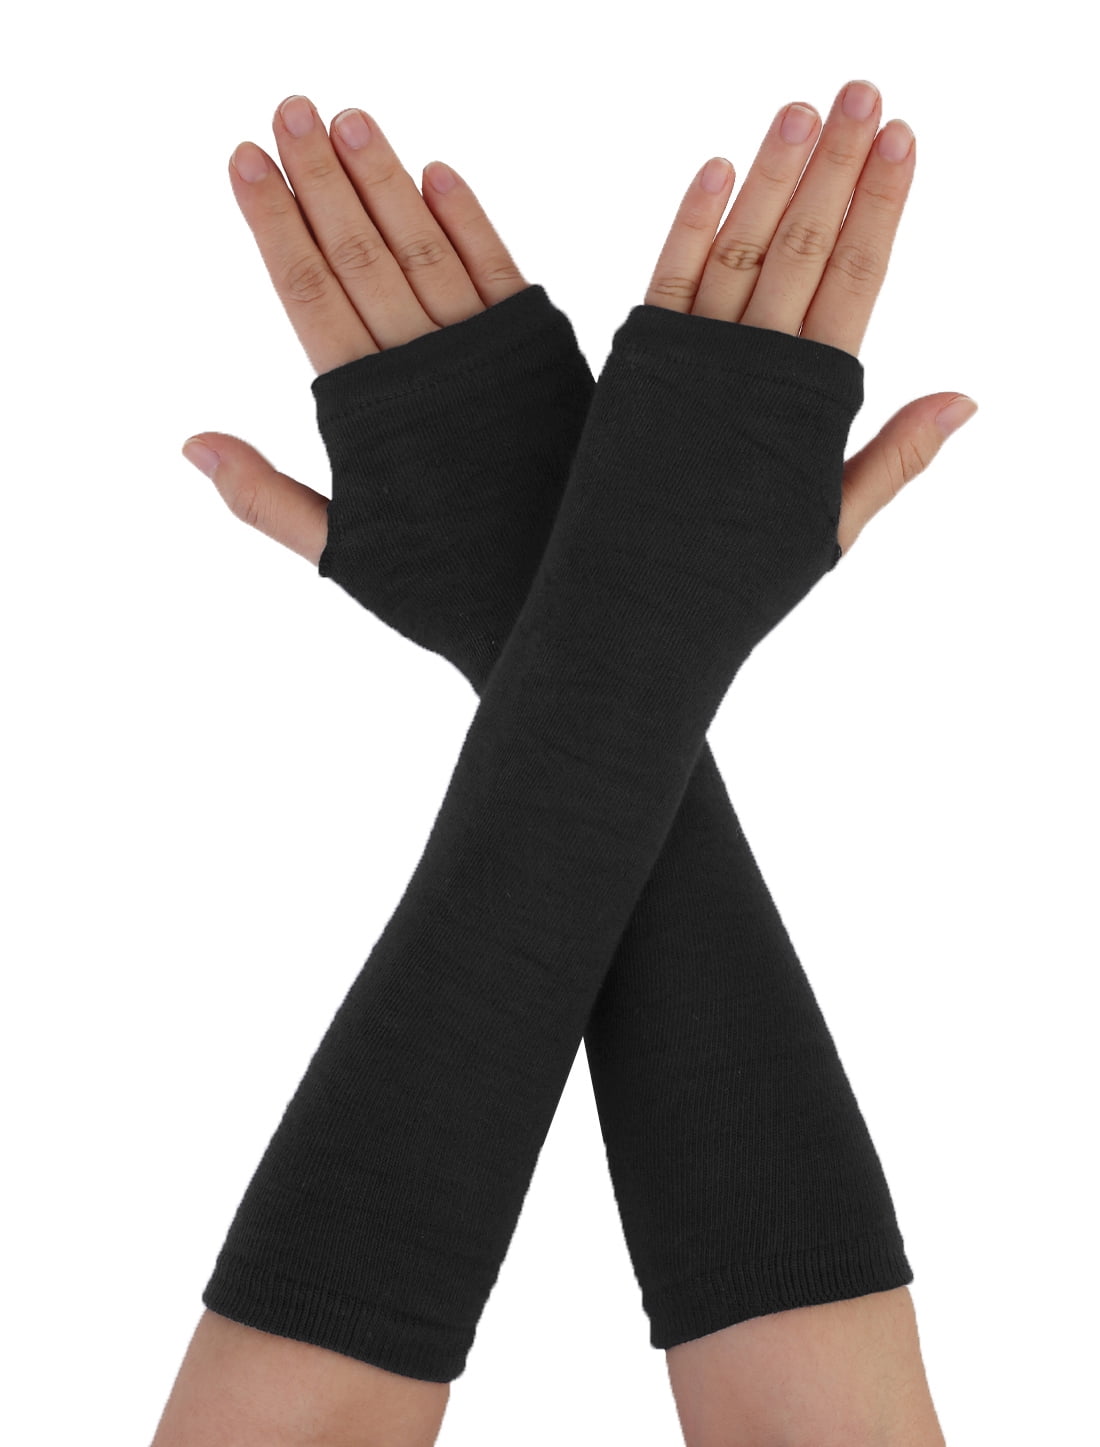 Black Heart Gloves knitting gloves, Black Finge - Artmosfair